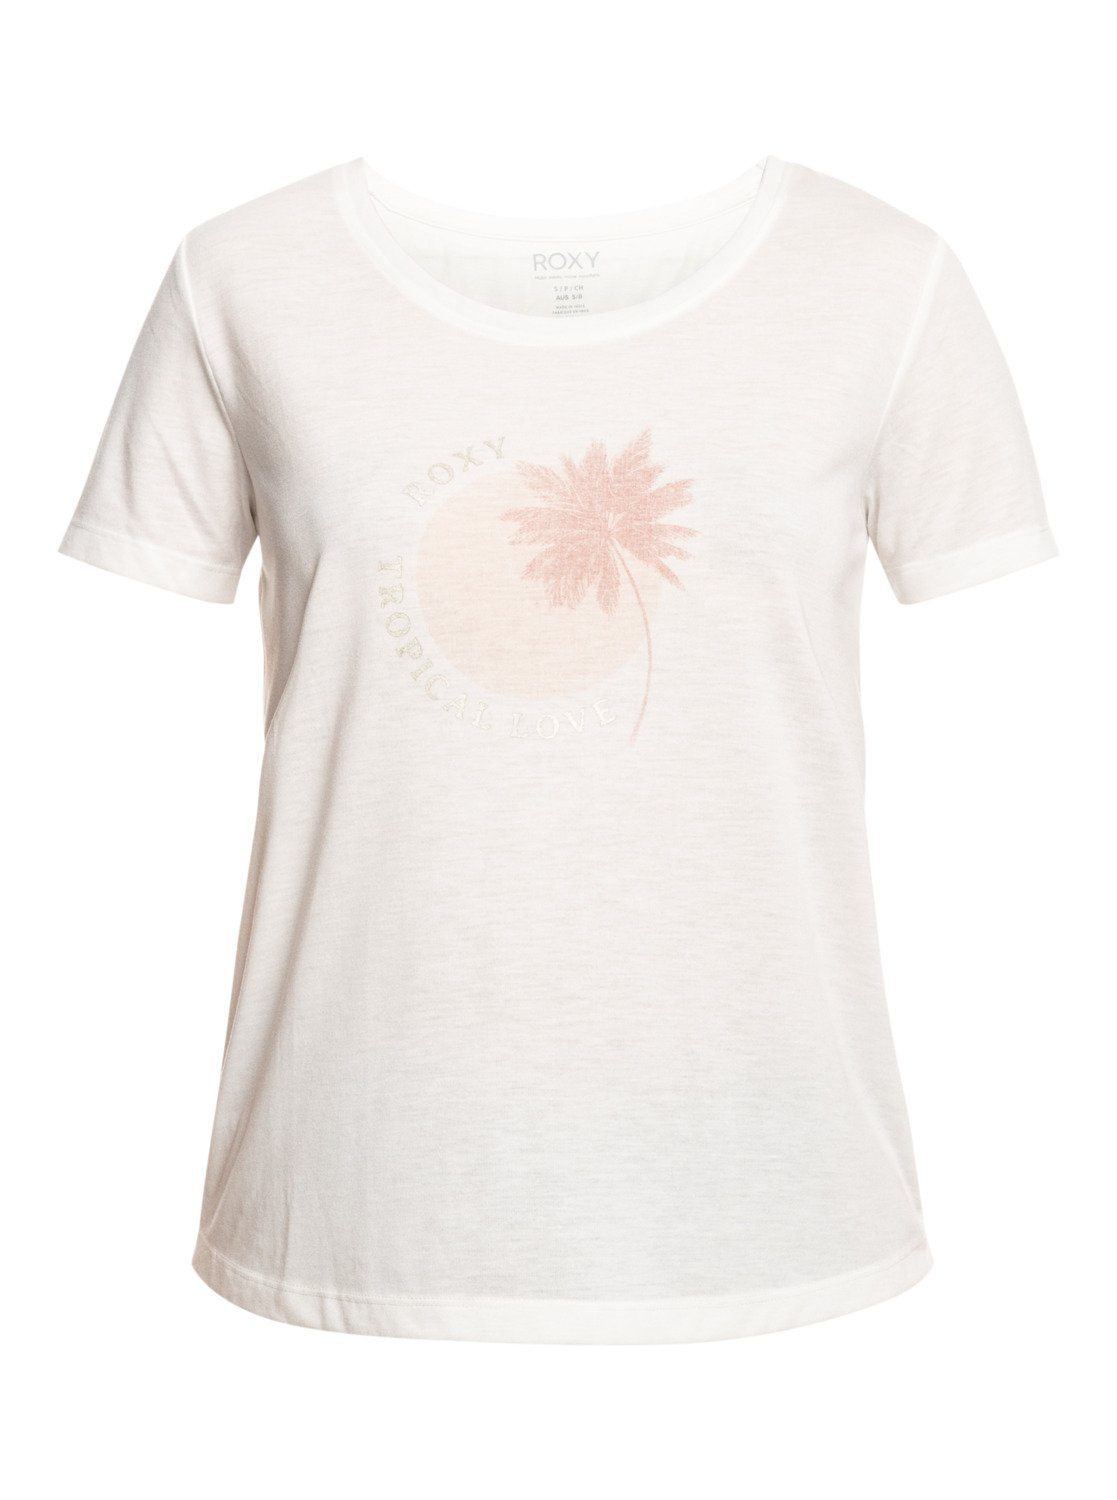 Roxy Shirts online kopen | OTTO | Bekijk collectie de